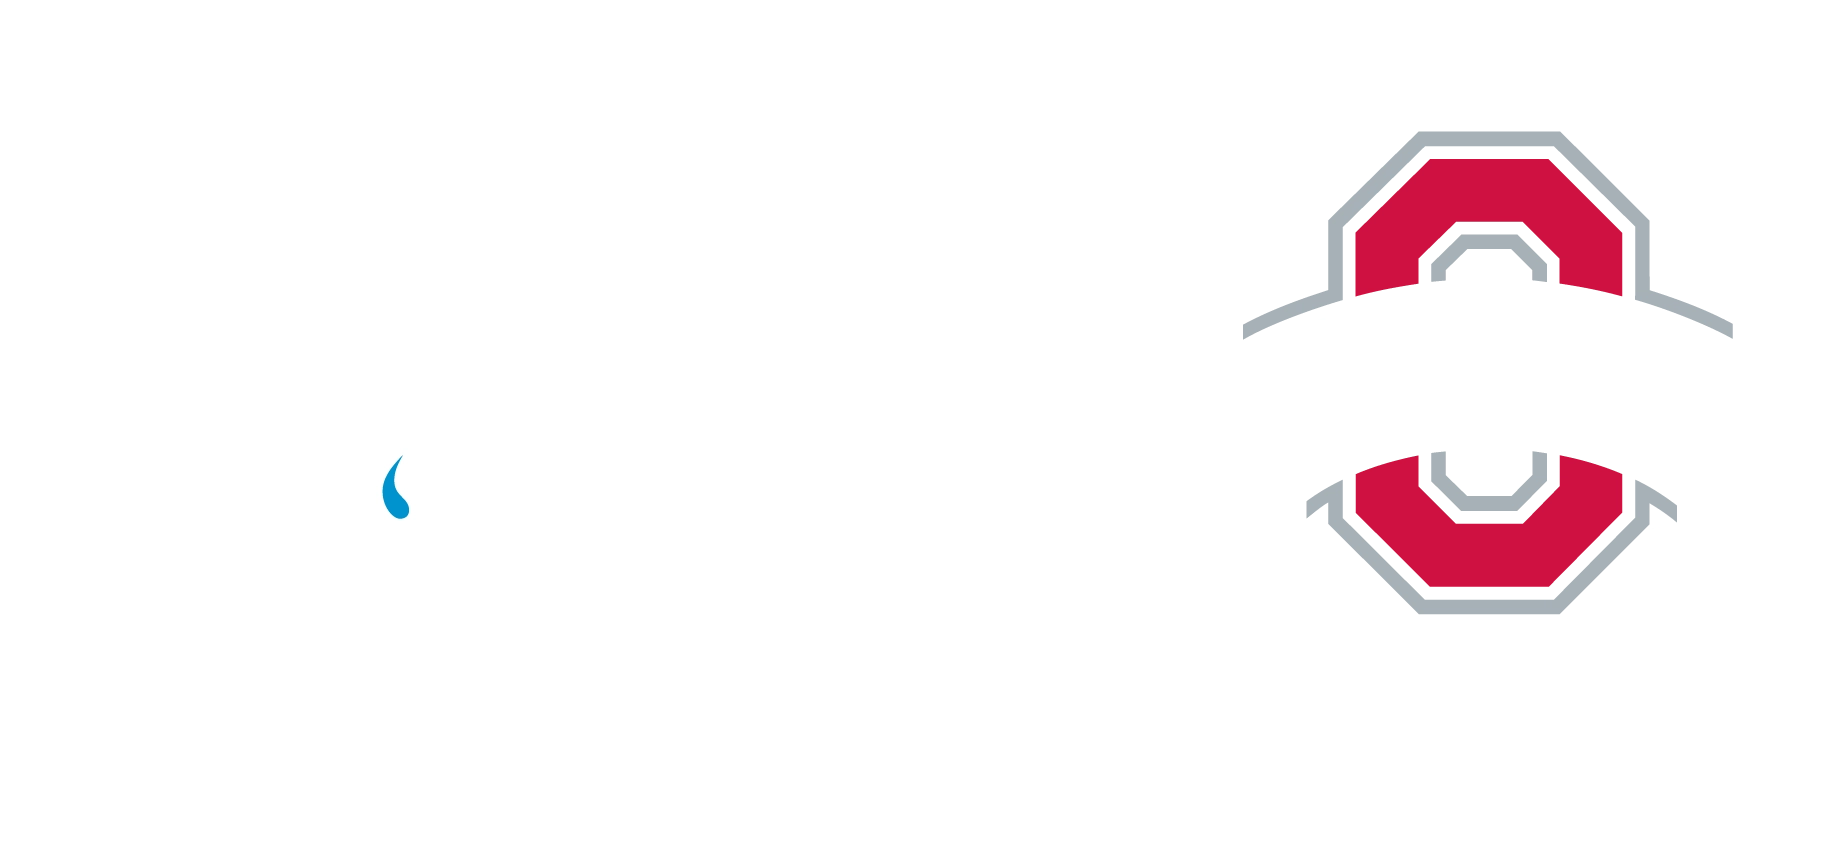 The Plumbing Source Logo